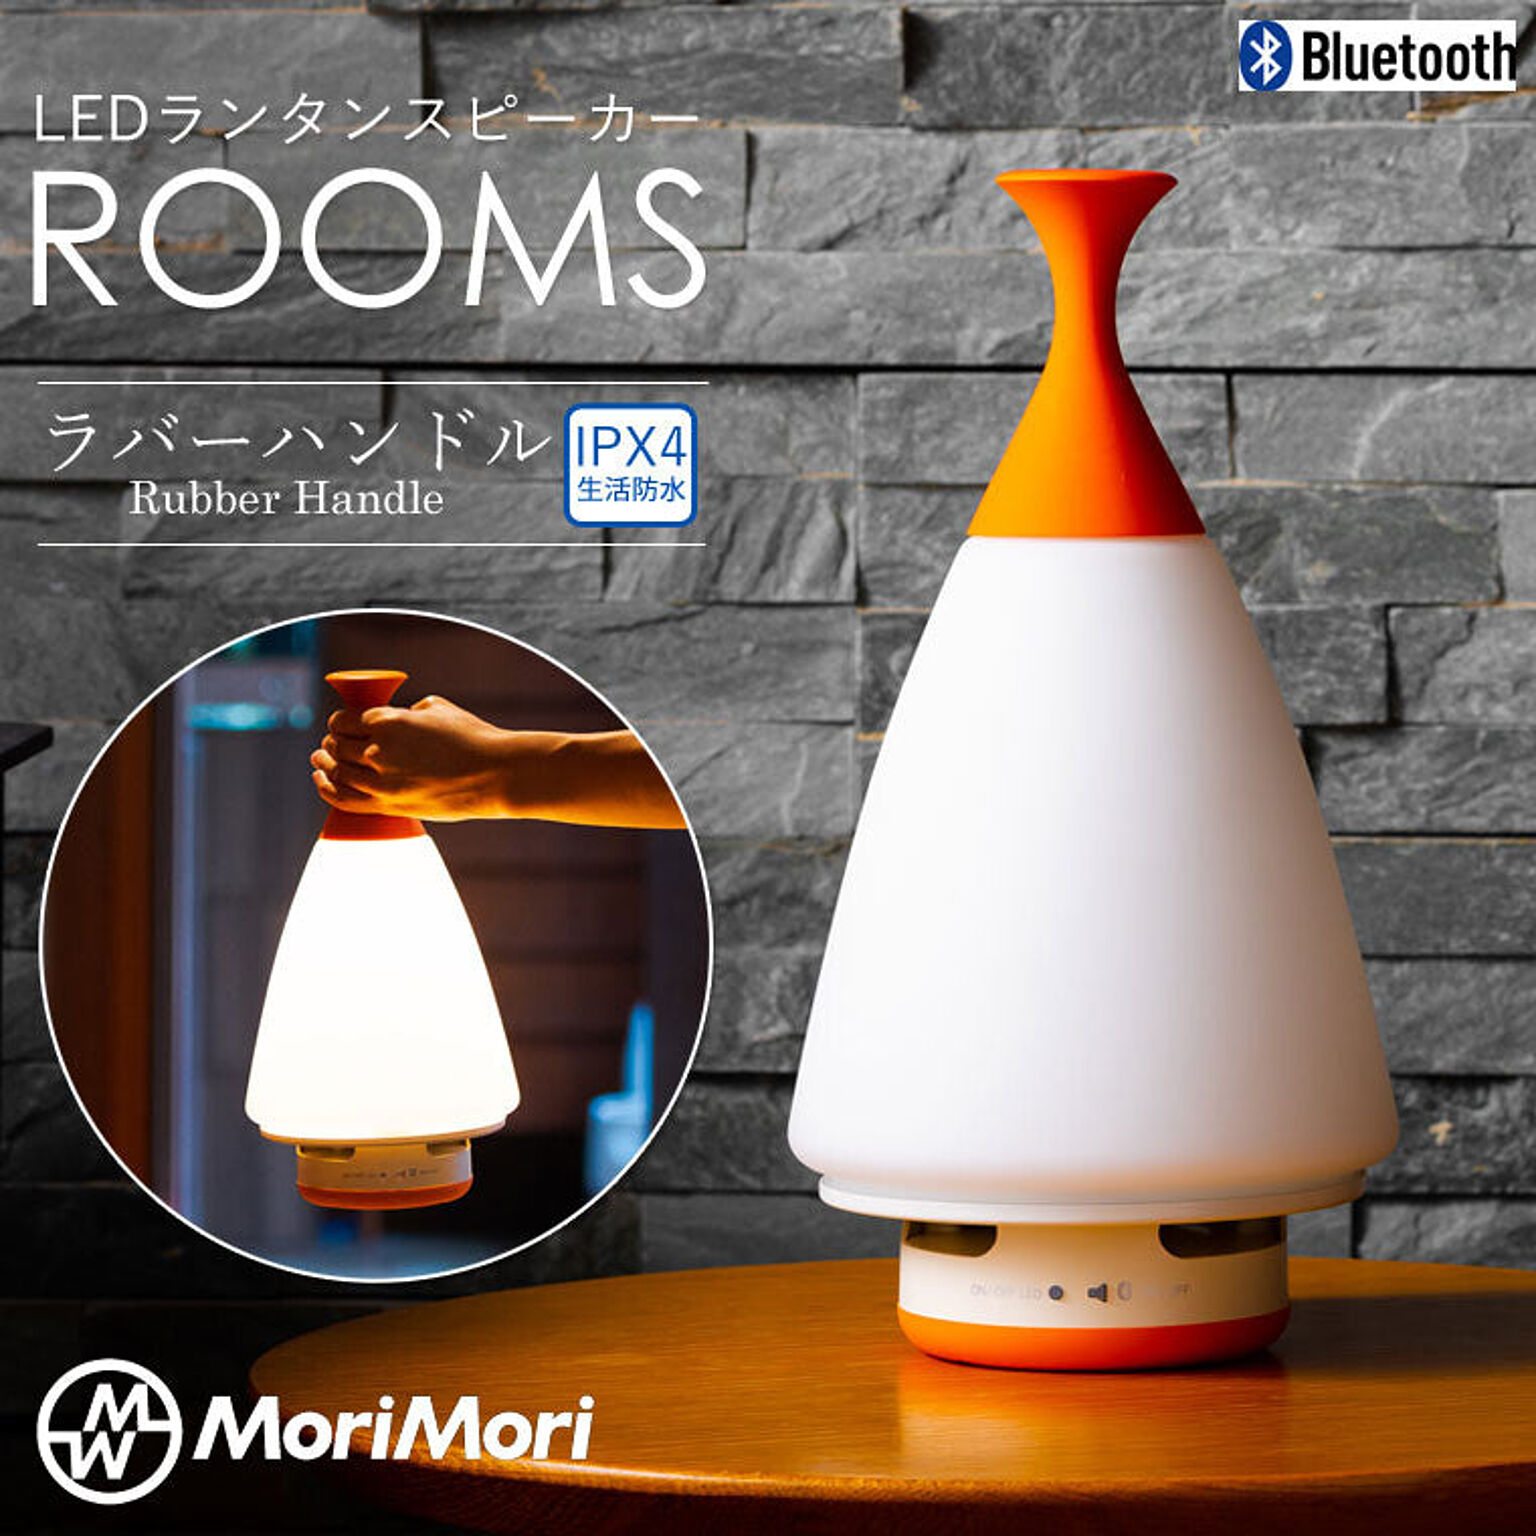 MoriMori LED ランタンスピーカー ROOMS ラバーハンドルタイプ